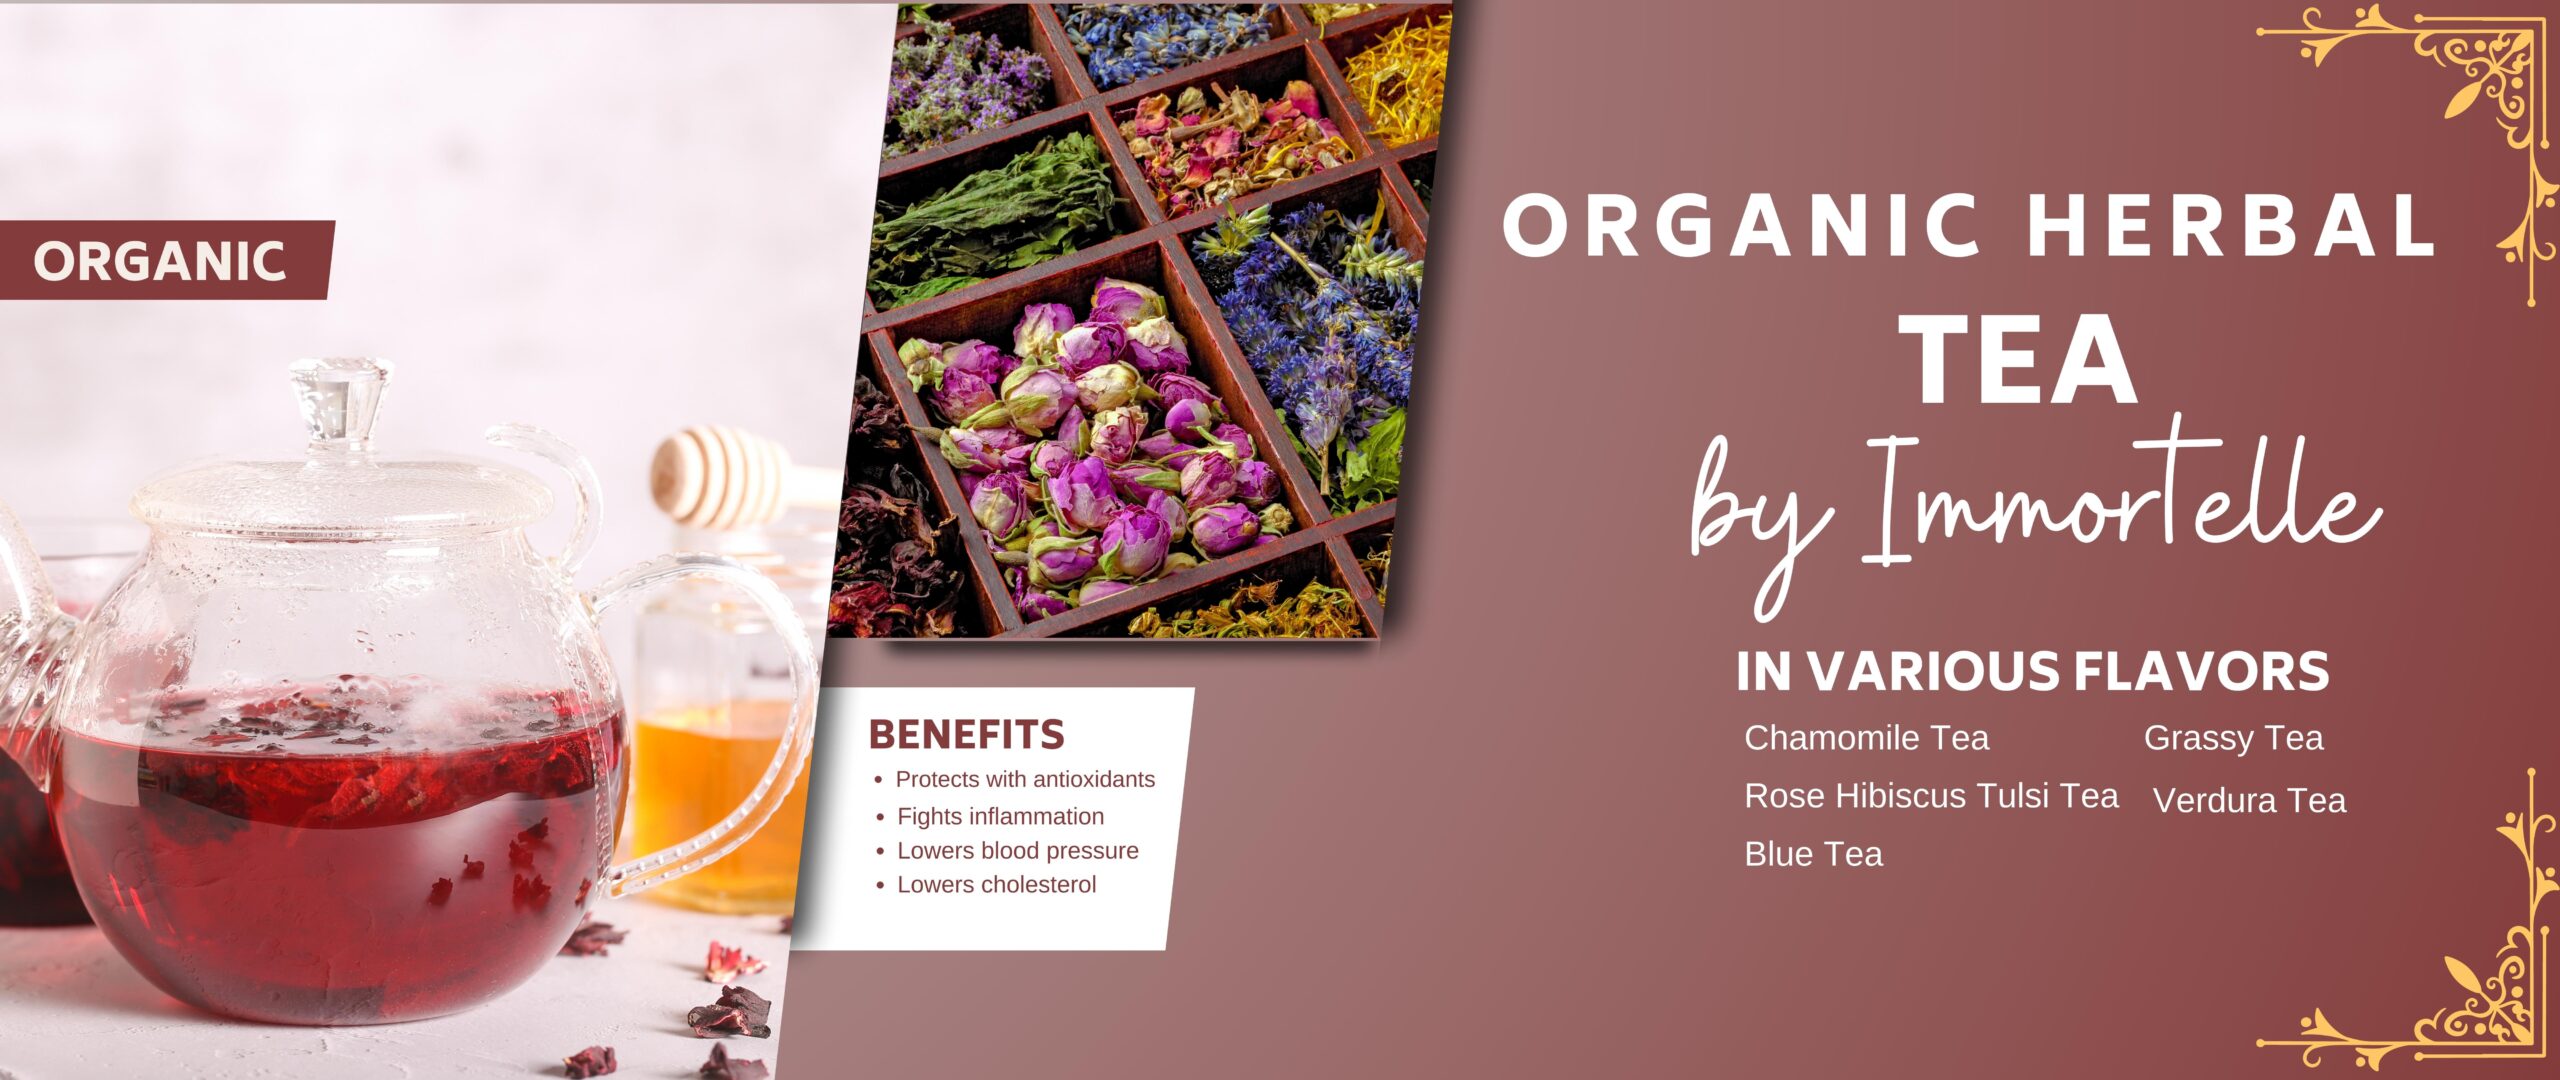 organic (2560 × 1080 px)